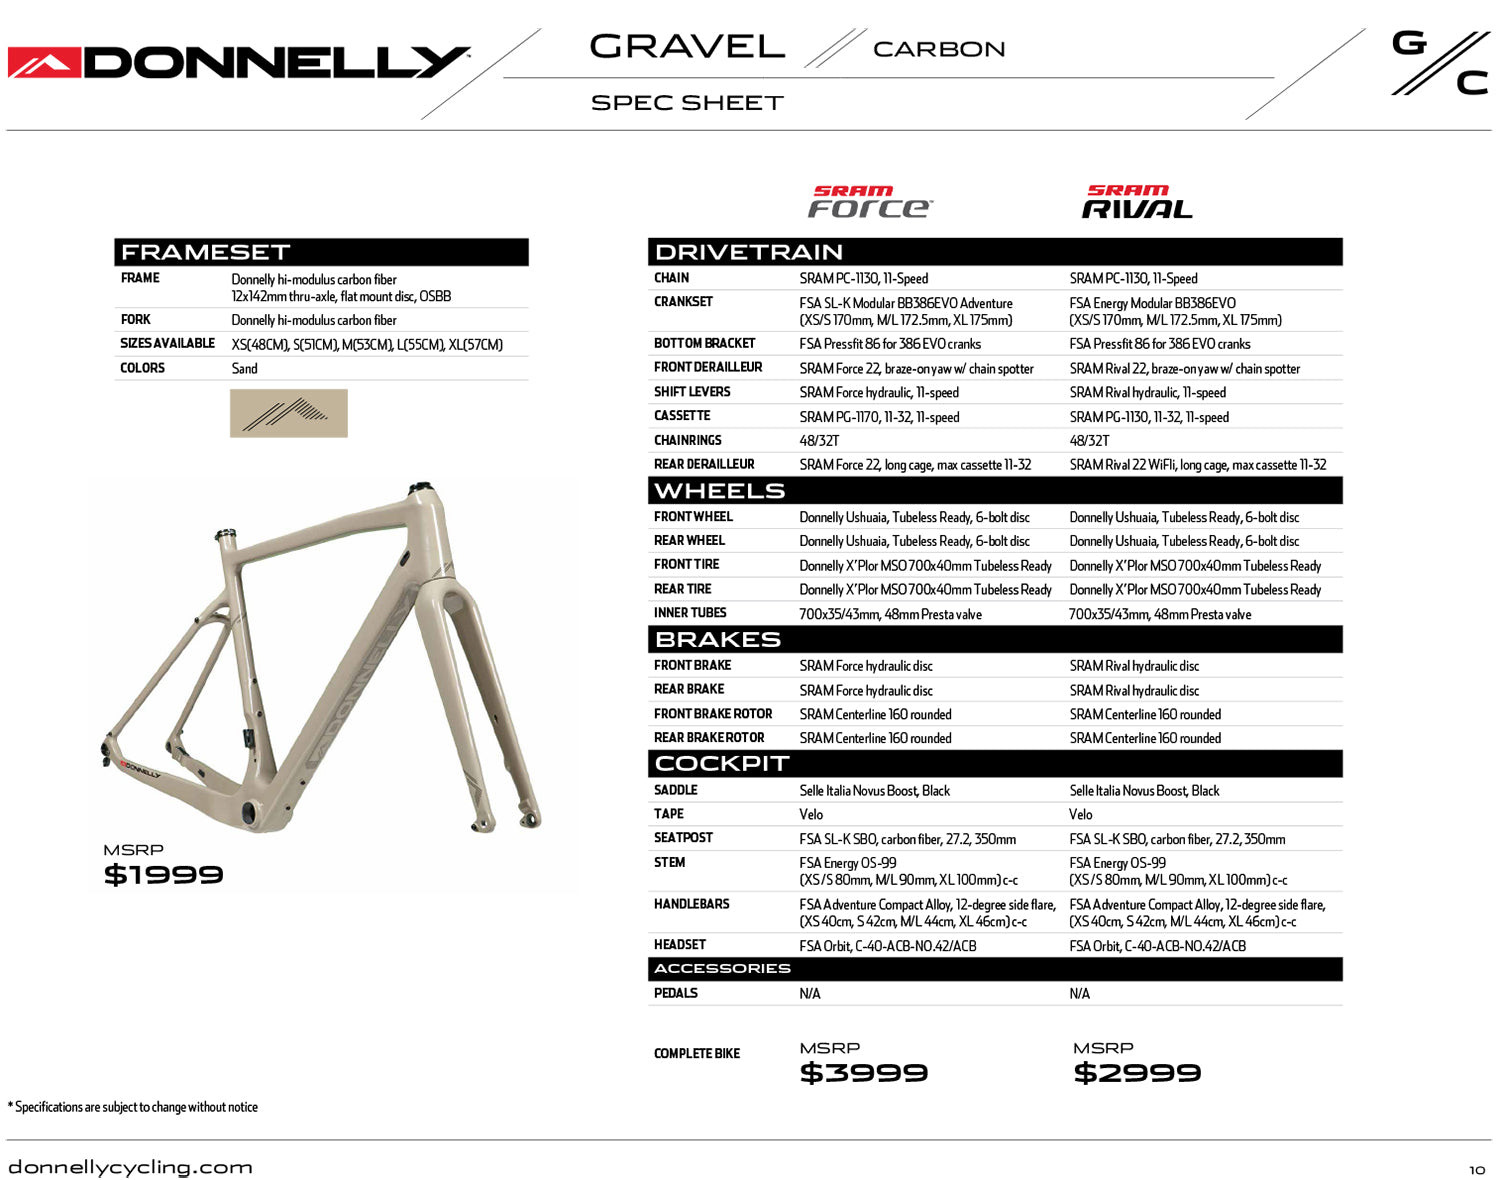 Donnelly GC Gravel Bike Frame